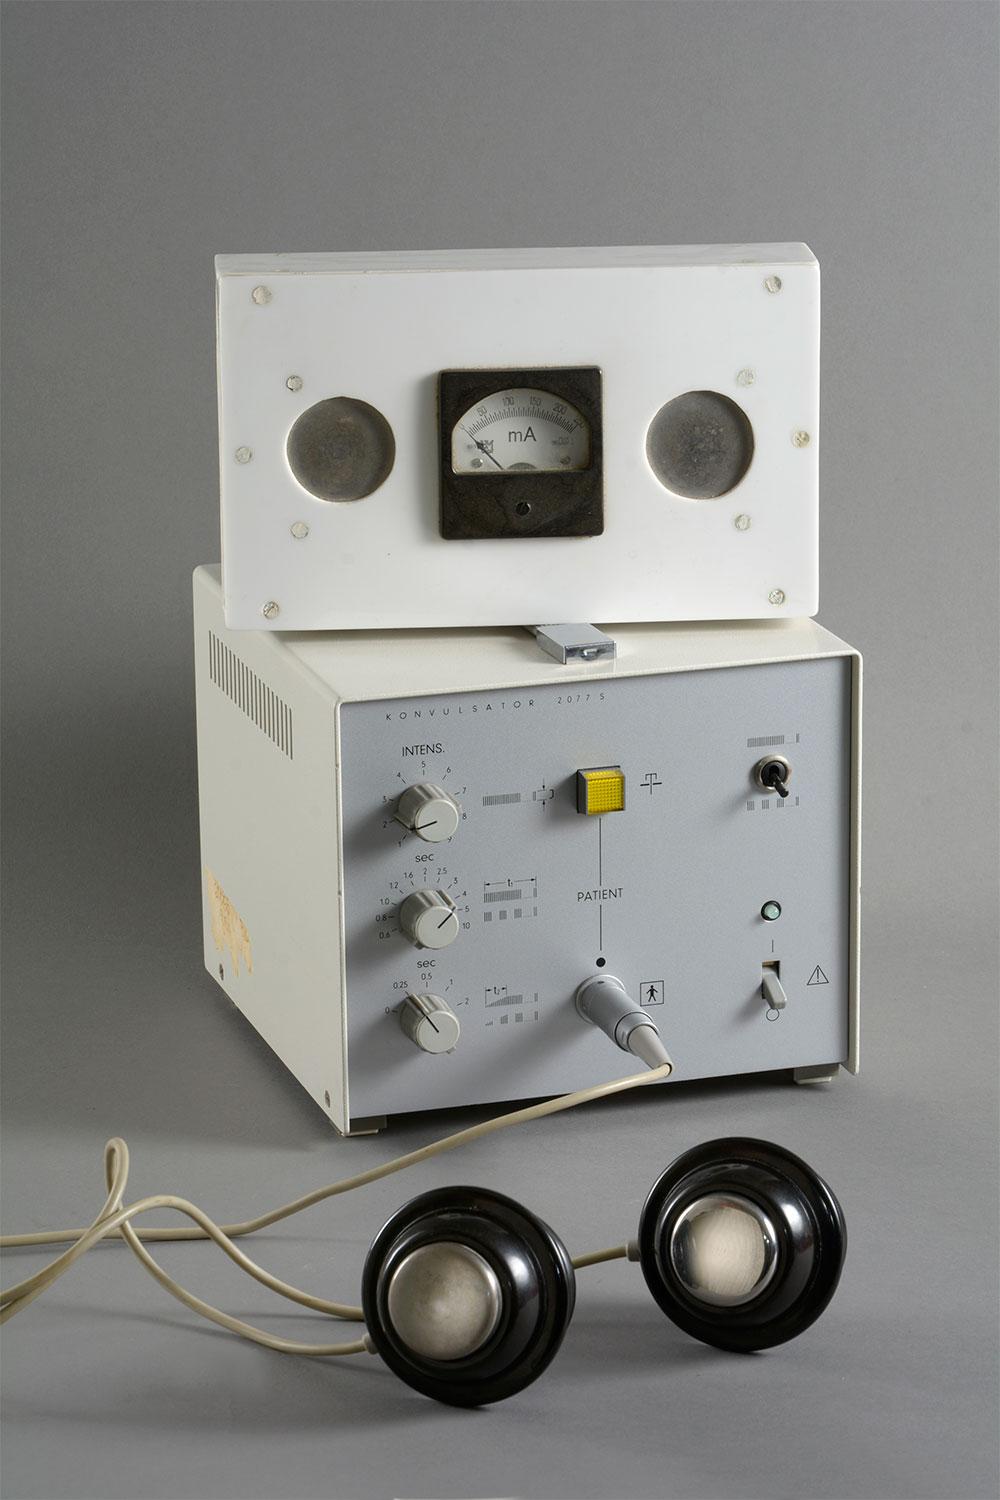 Siemens Konvulsator 2077. Den øverste hvide kasse med amperemeter er fabrikeret på sygehusets værksted og blev brugt til at teste elektroderne inden brug. Kassen har samme modstand som et menneskehoved (Steno Museet/foto: Erik Balle).